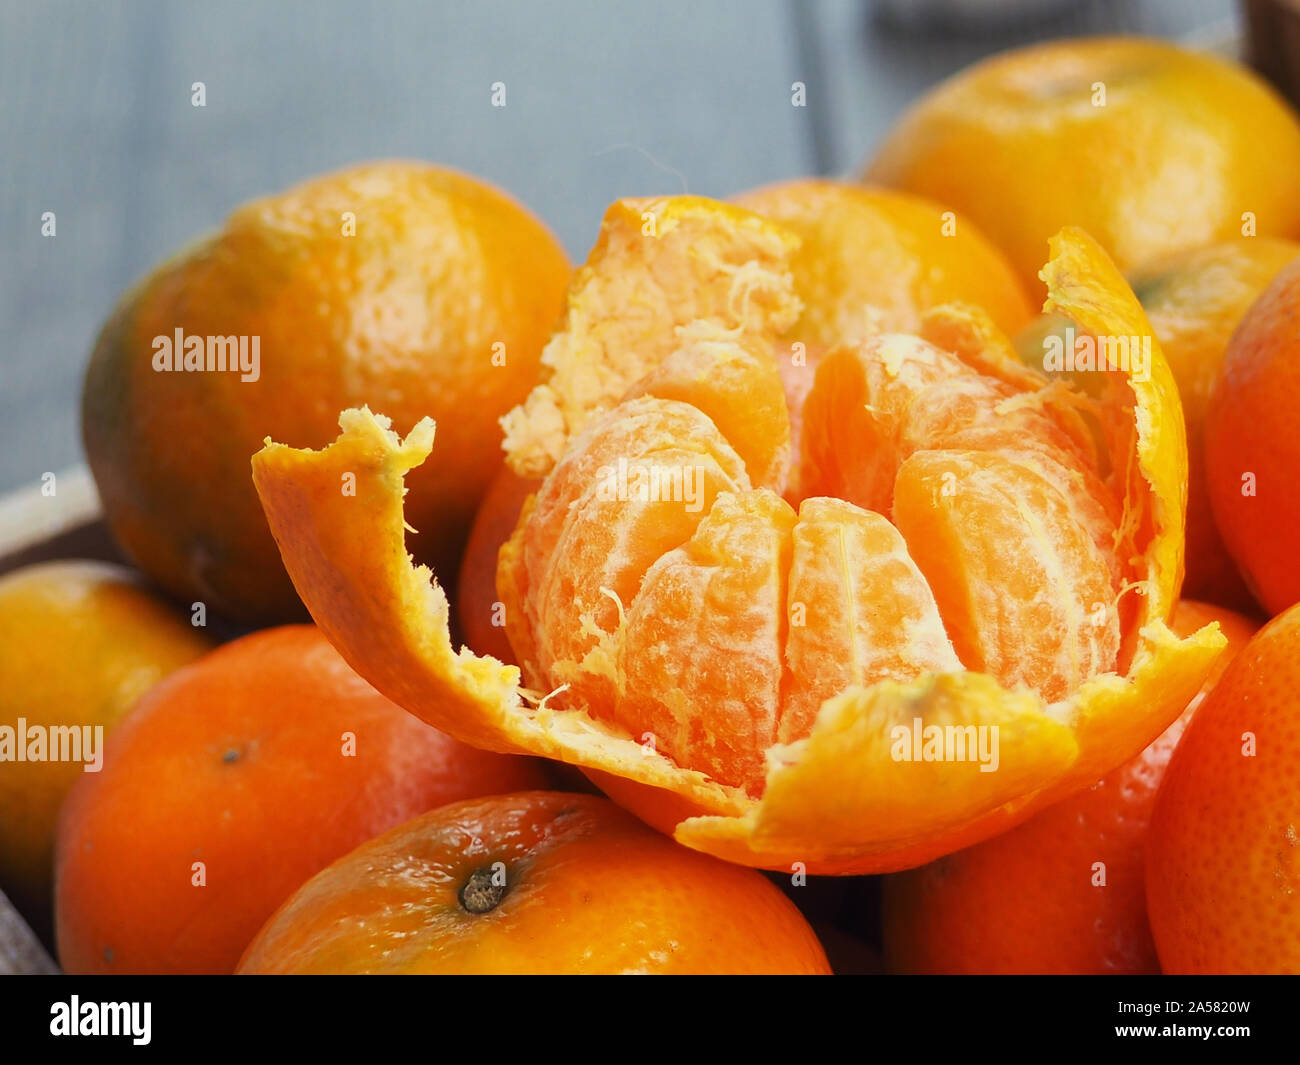 Holzkiste mit Mandarinen gefüllt. Eine Tangerine ist geschält. Neues Jahr Konzept. Stockfoto